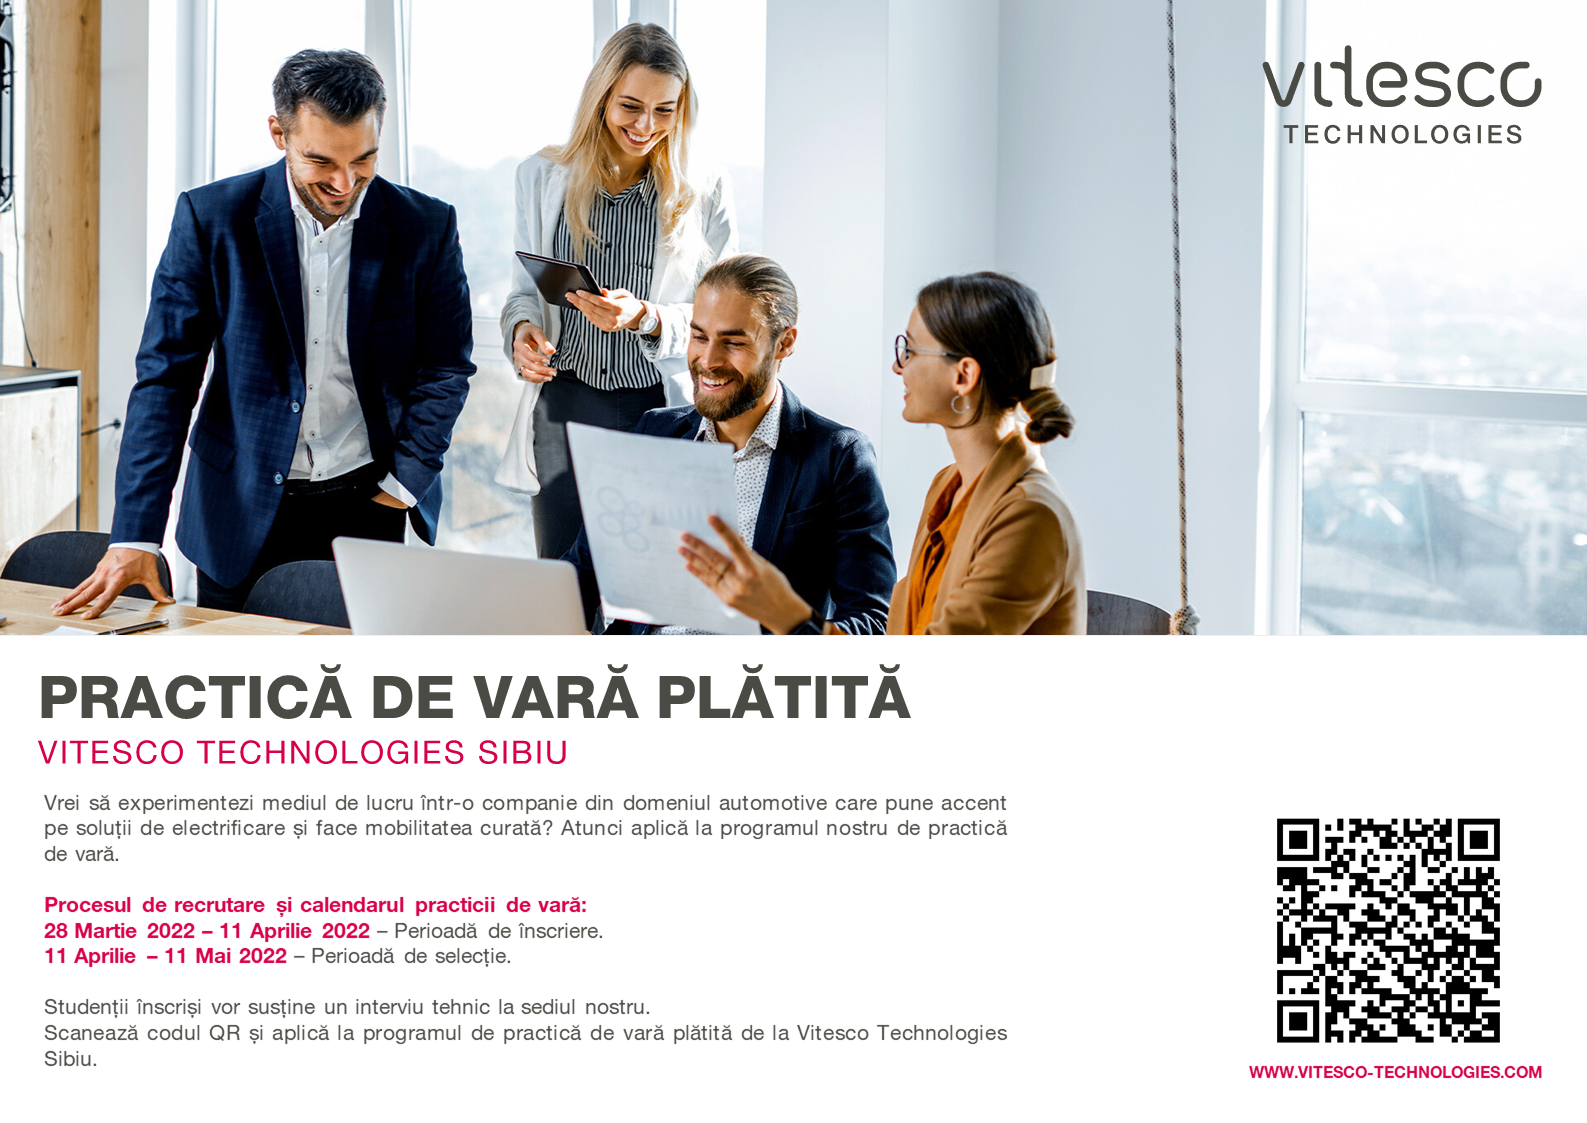 Vitesco Technologies Sibiu – Practica De Vară Plătită